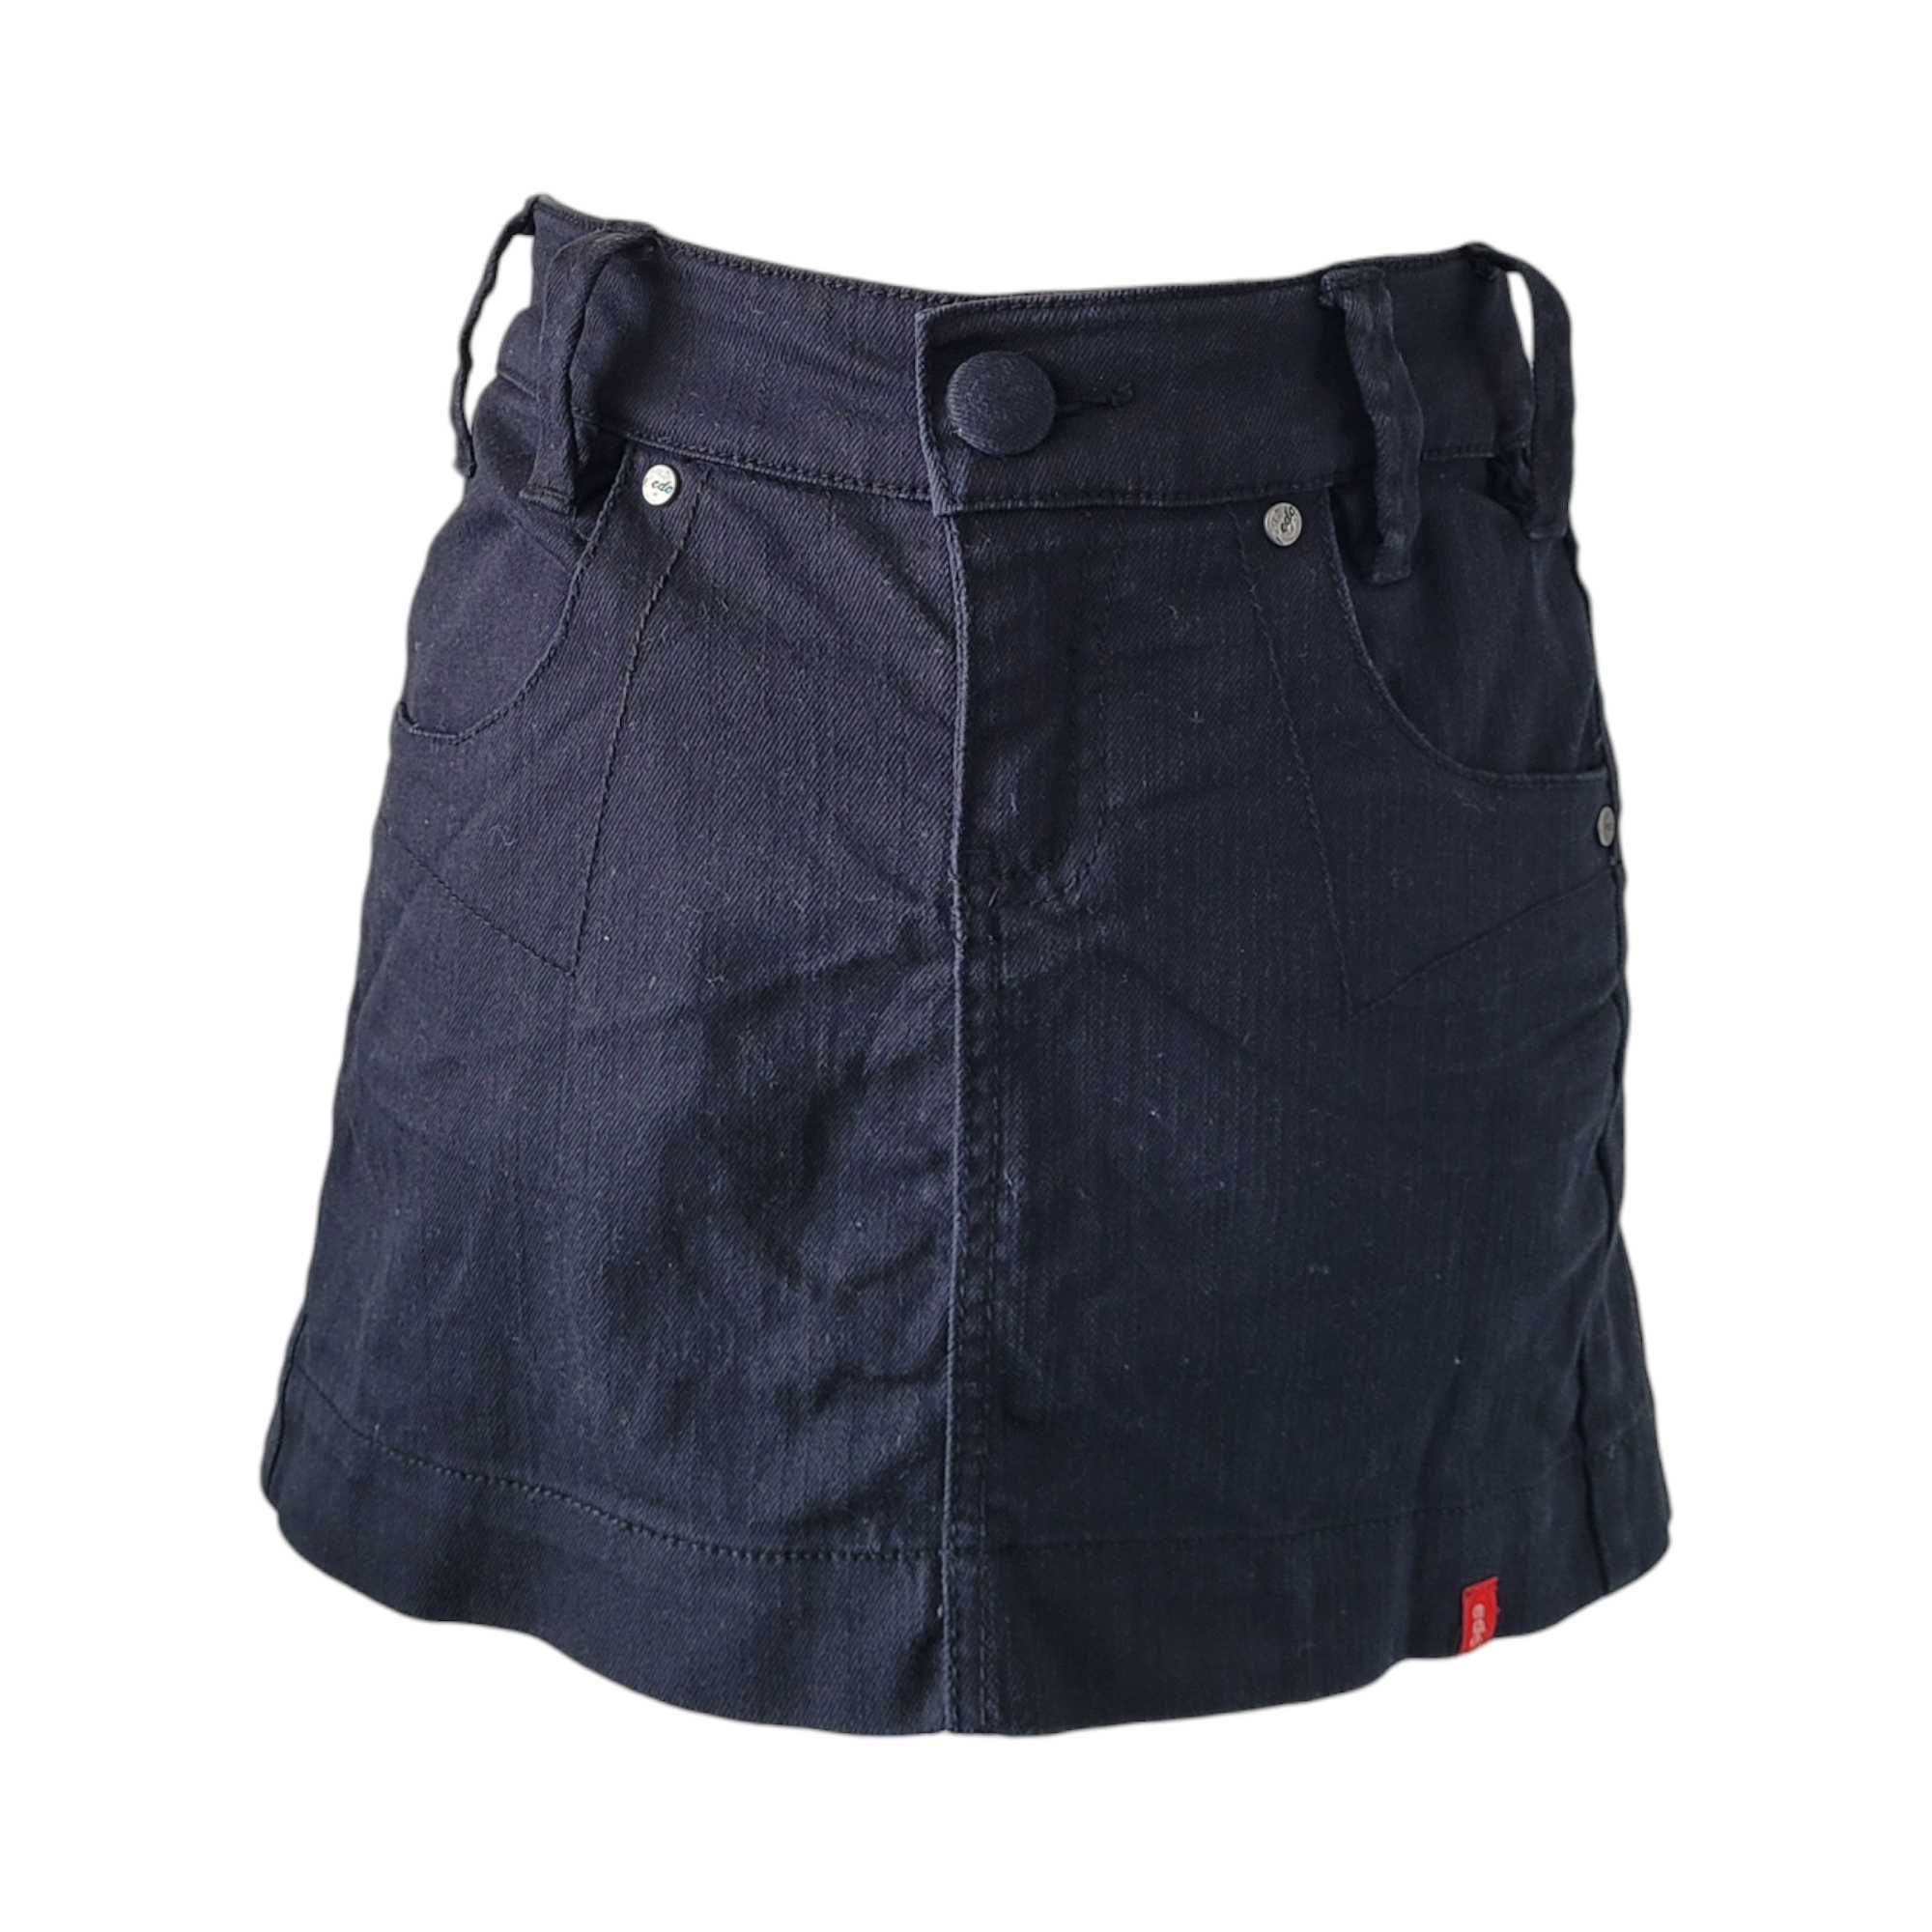 Czarna krótka jeansowa spódnica mini fałdy M japan style kawaii plisy